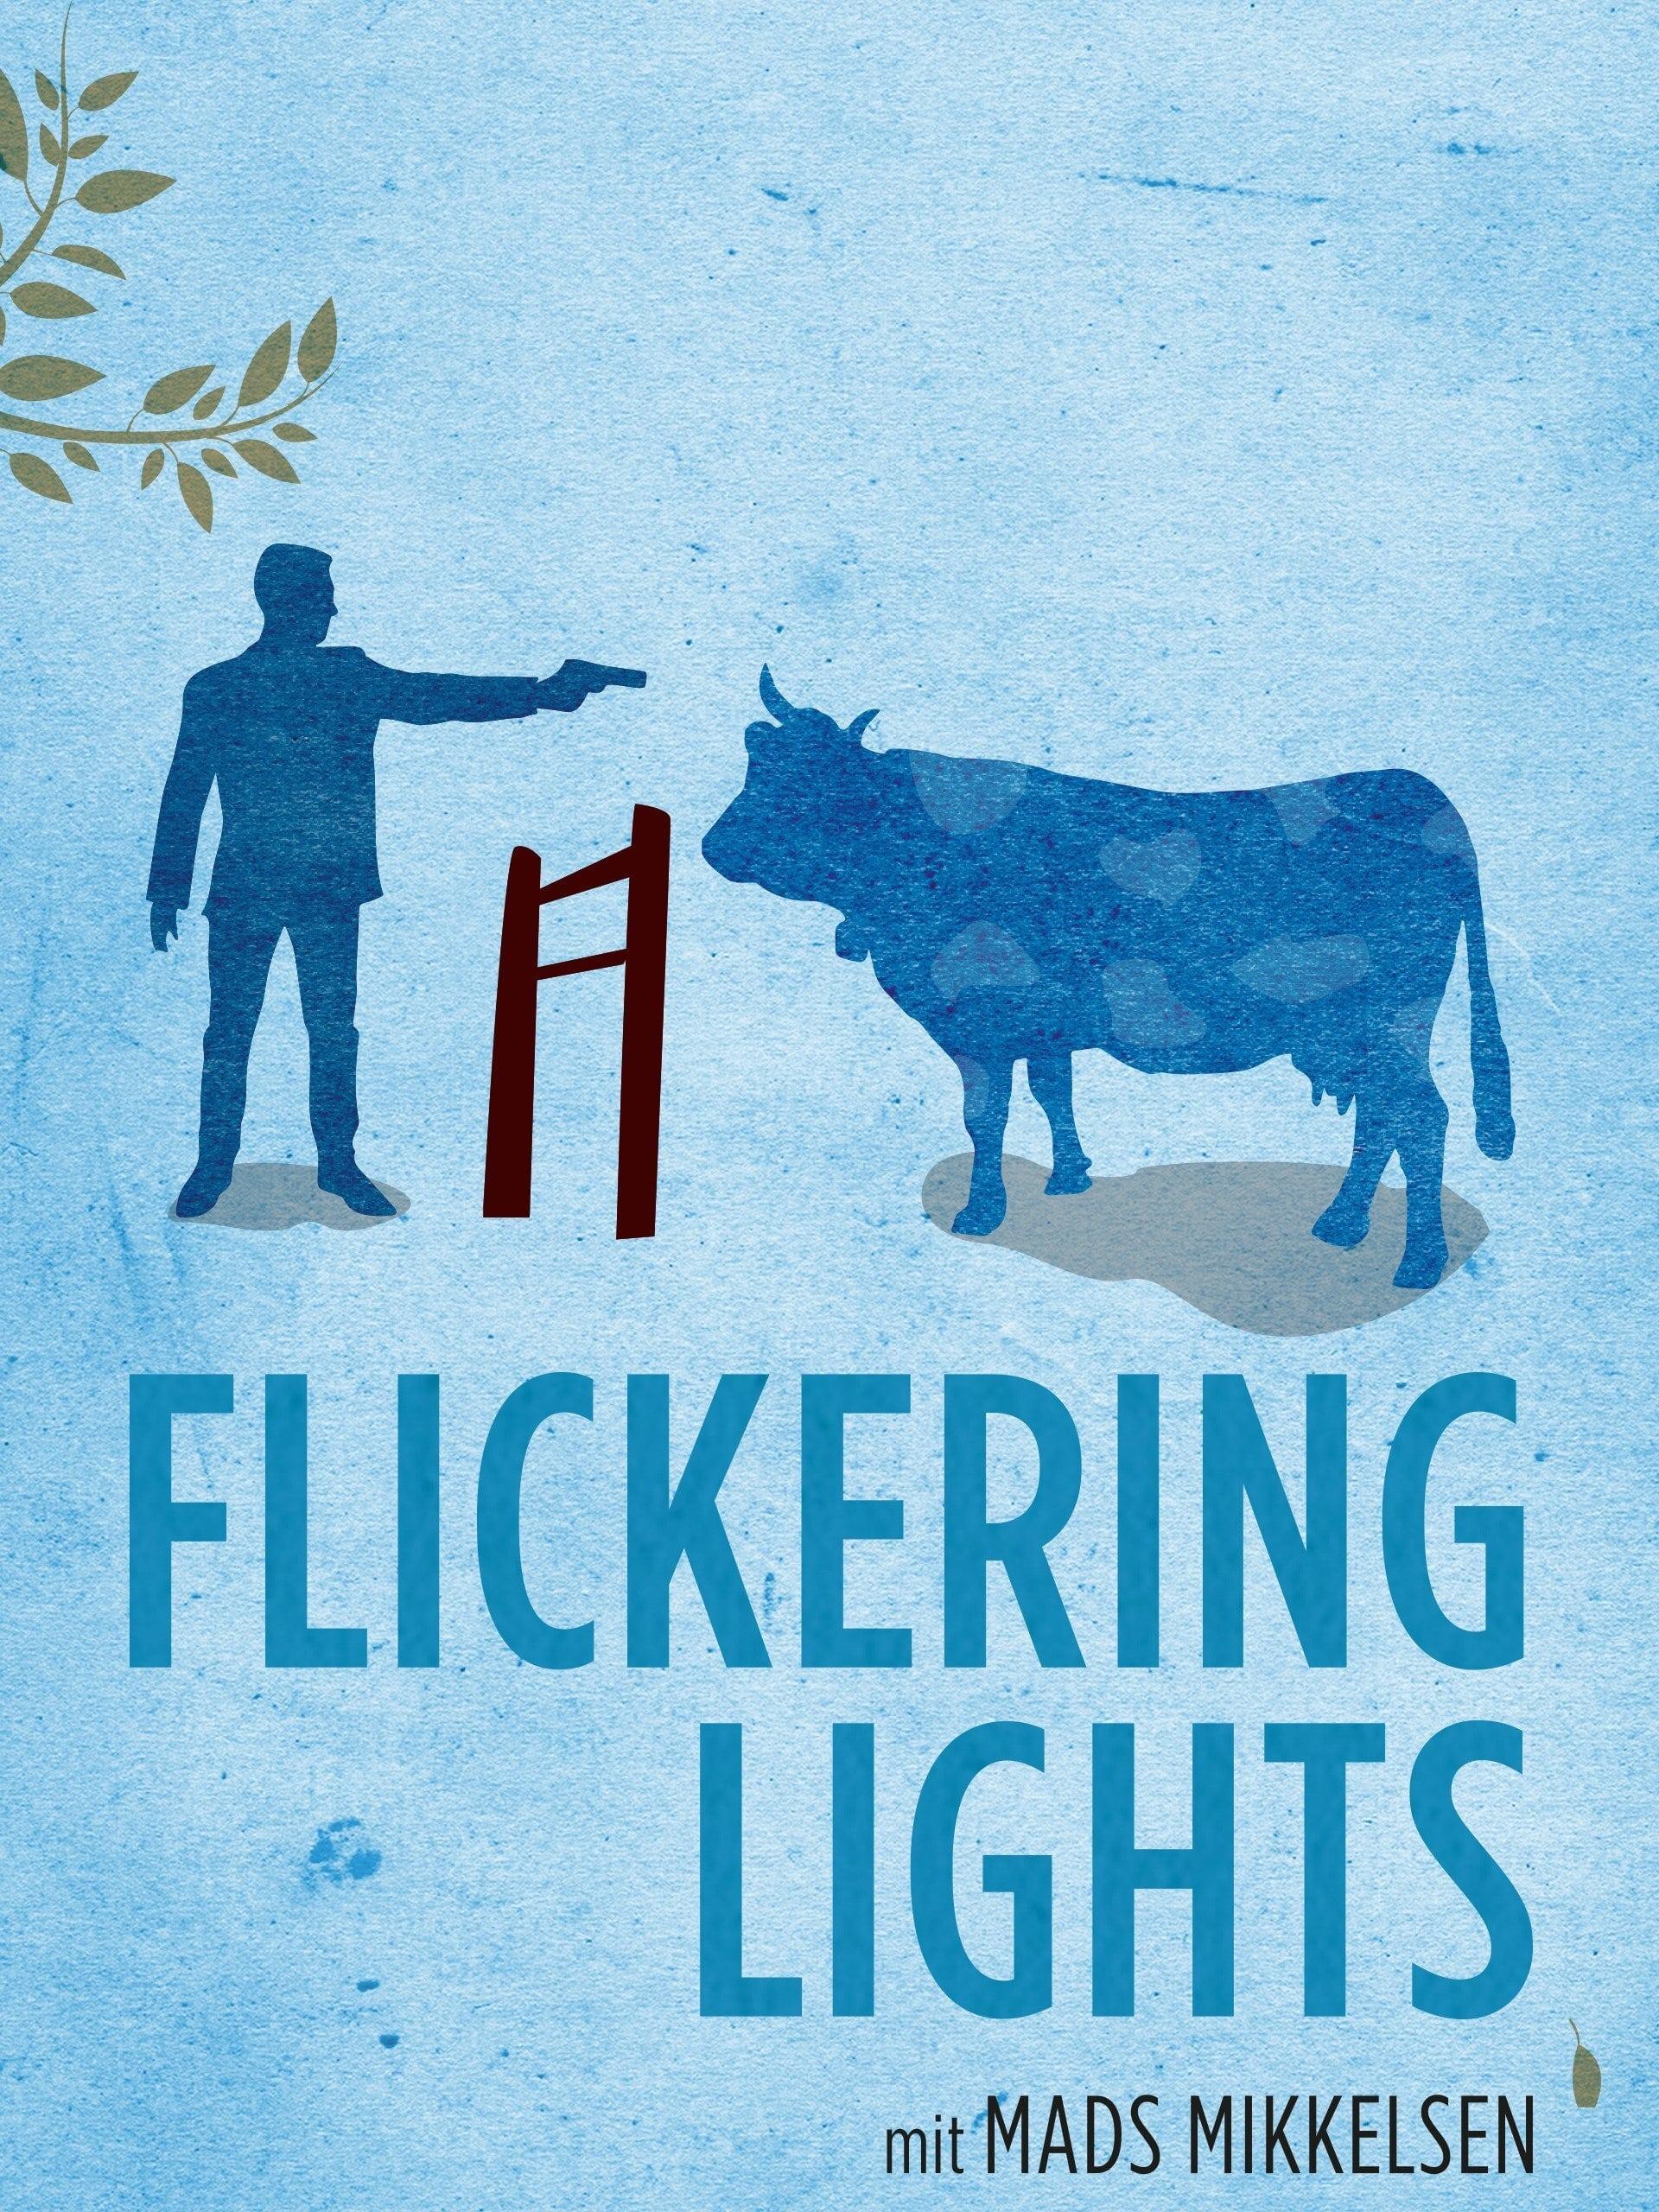 Flickering Lights poster